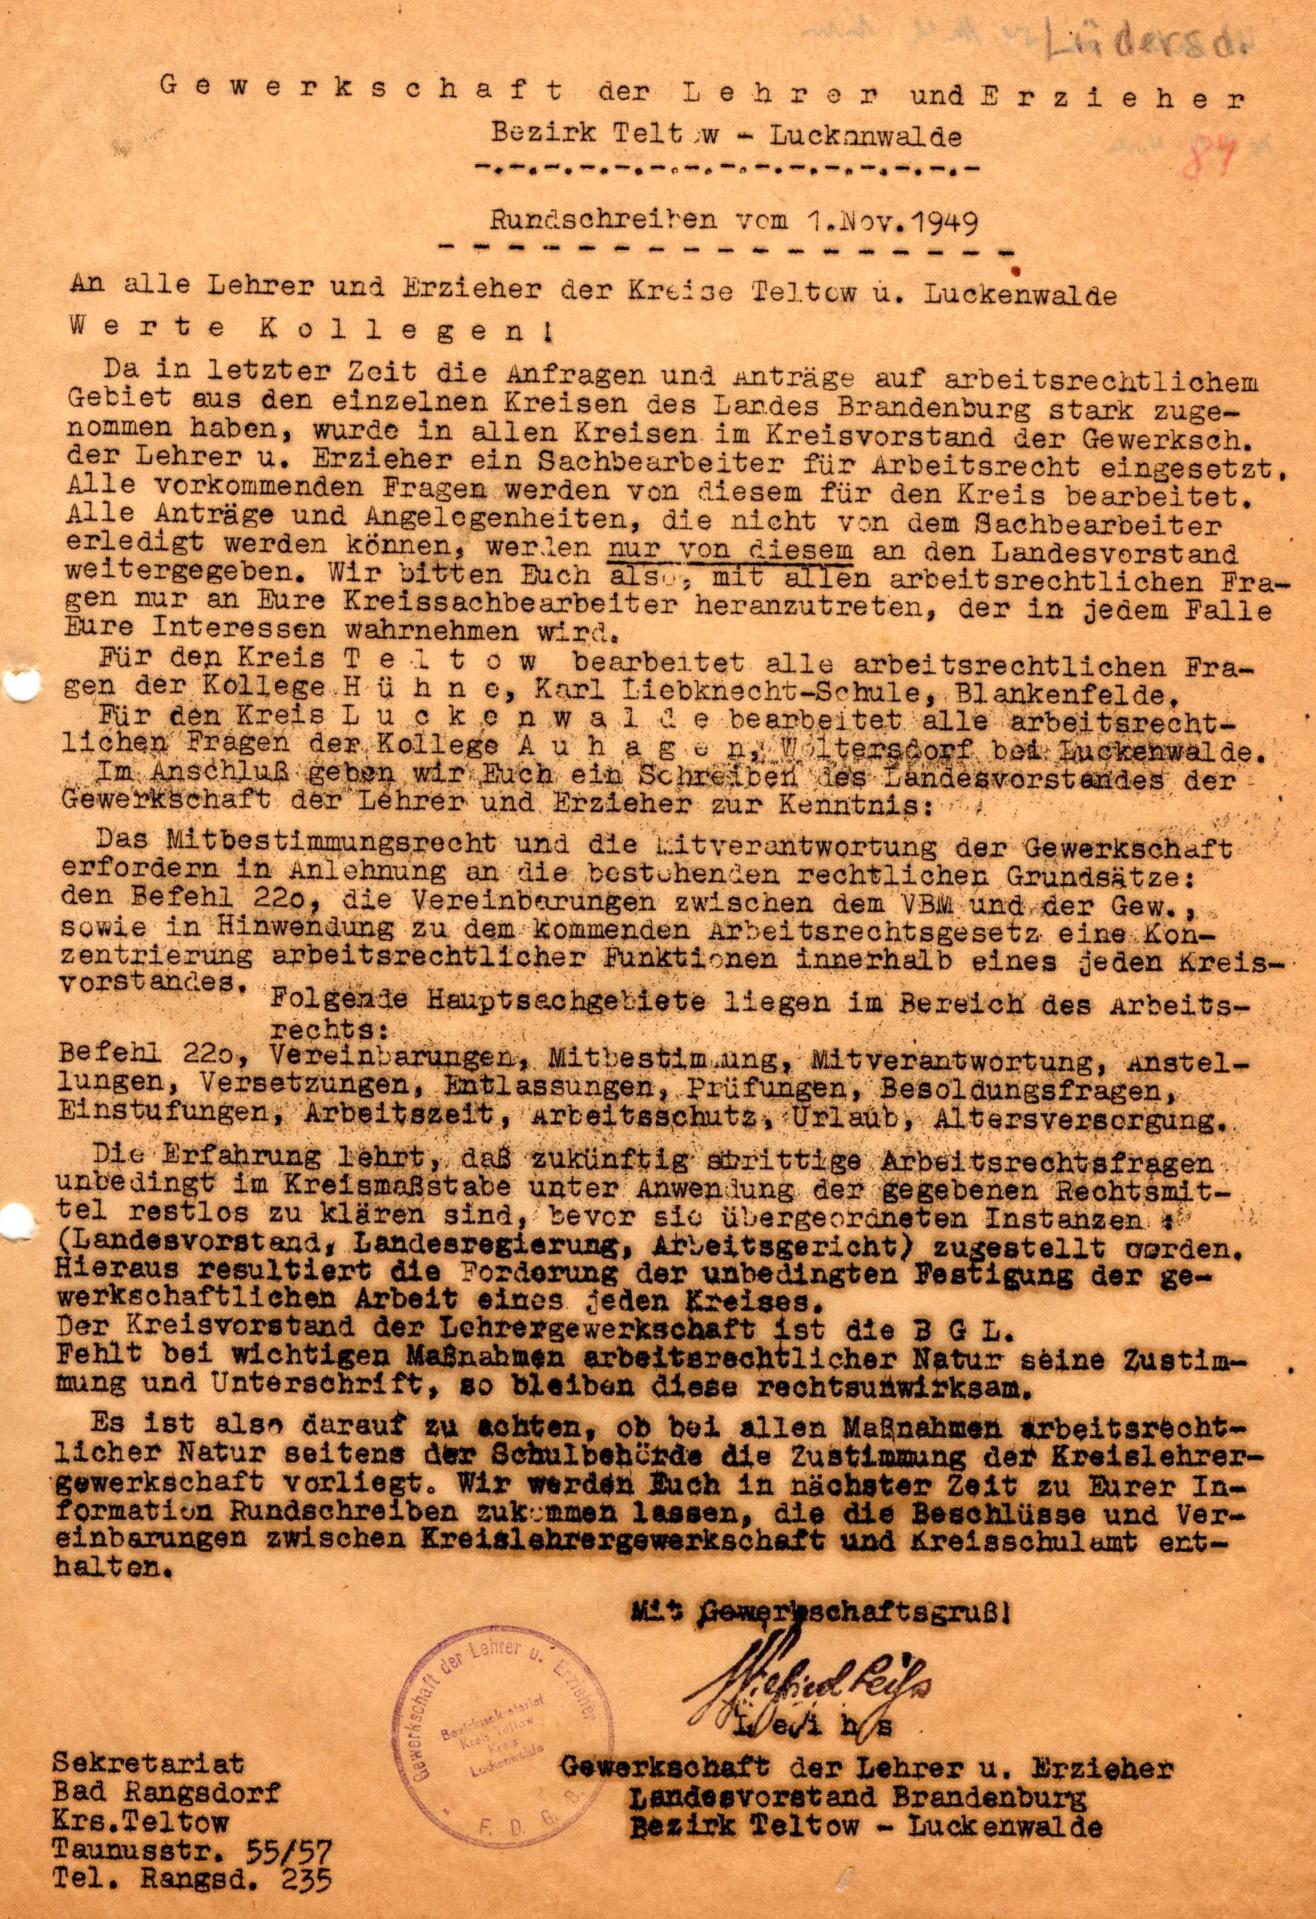 Rundschreiben 1.11.1949 - über Mitbestimmung der Gewrkschaft